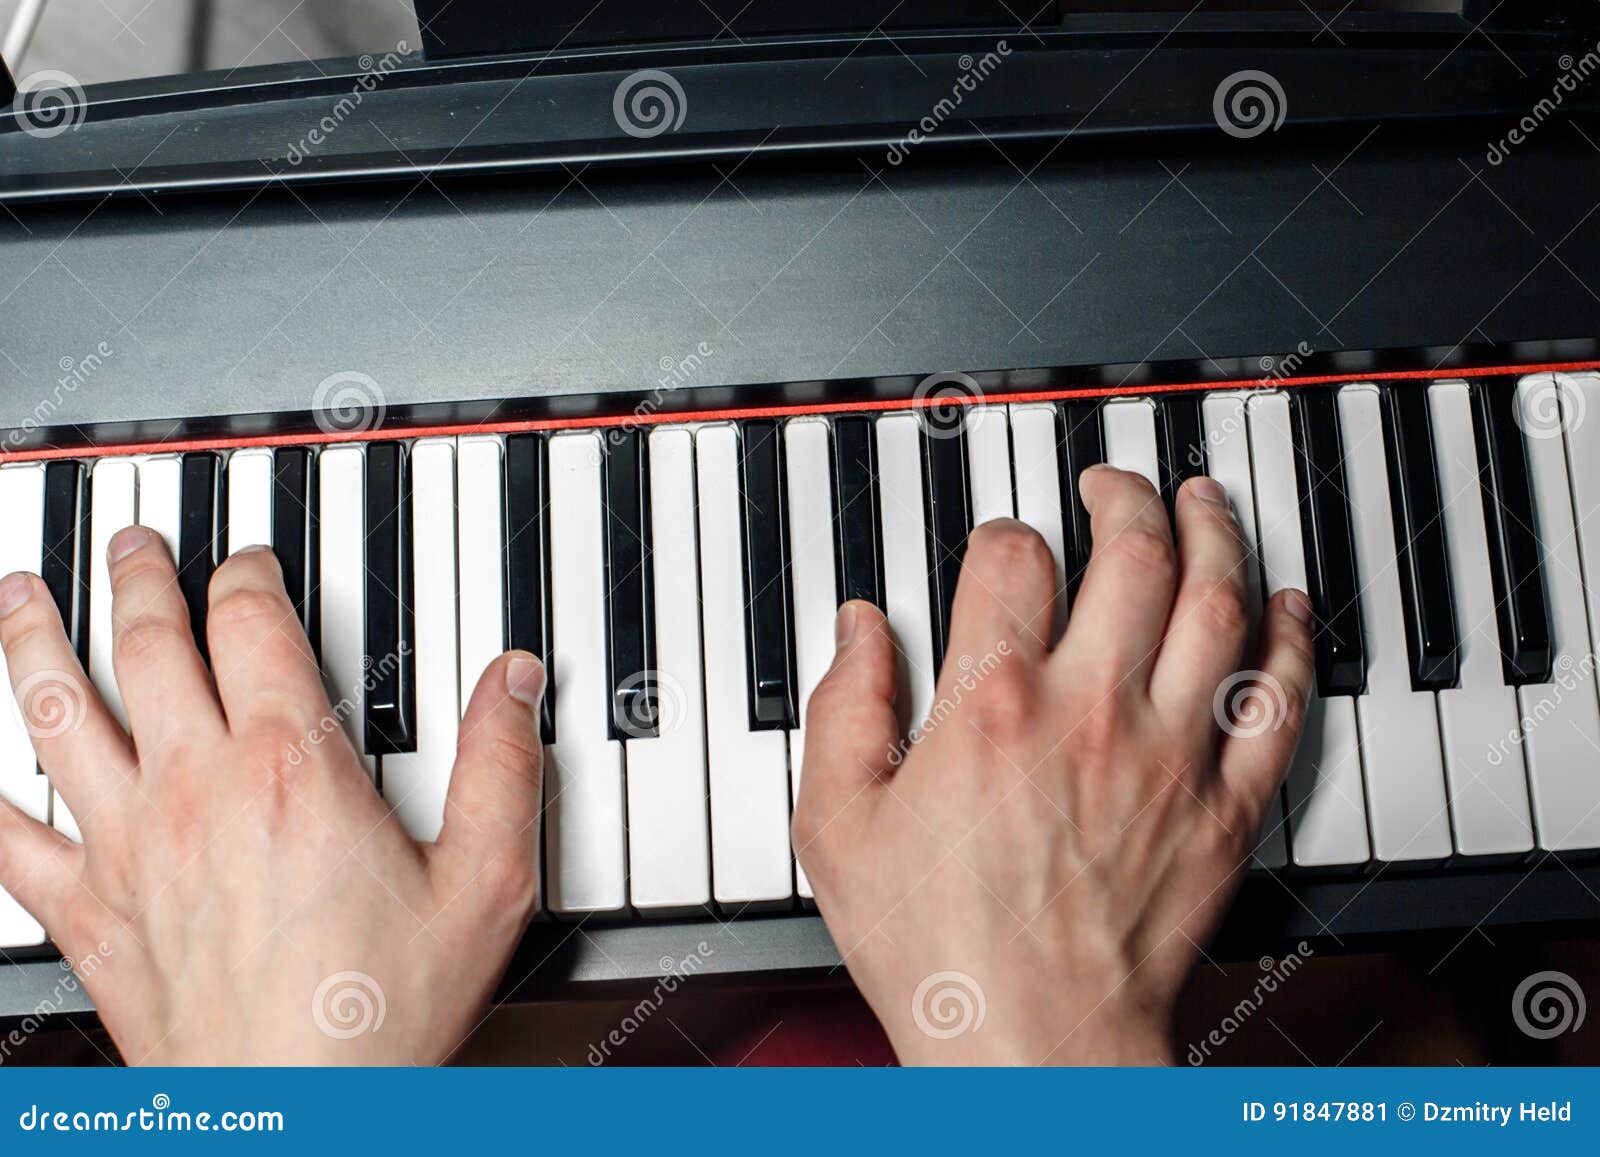 Рояль россии играть. Руки на пианино сверху. Руки на пианино вид сверху. Рояль и руки сверху. Руки пианиста сверху.